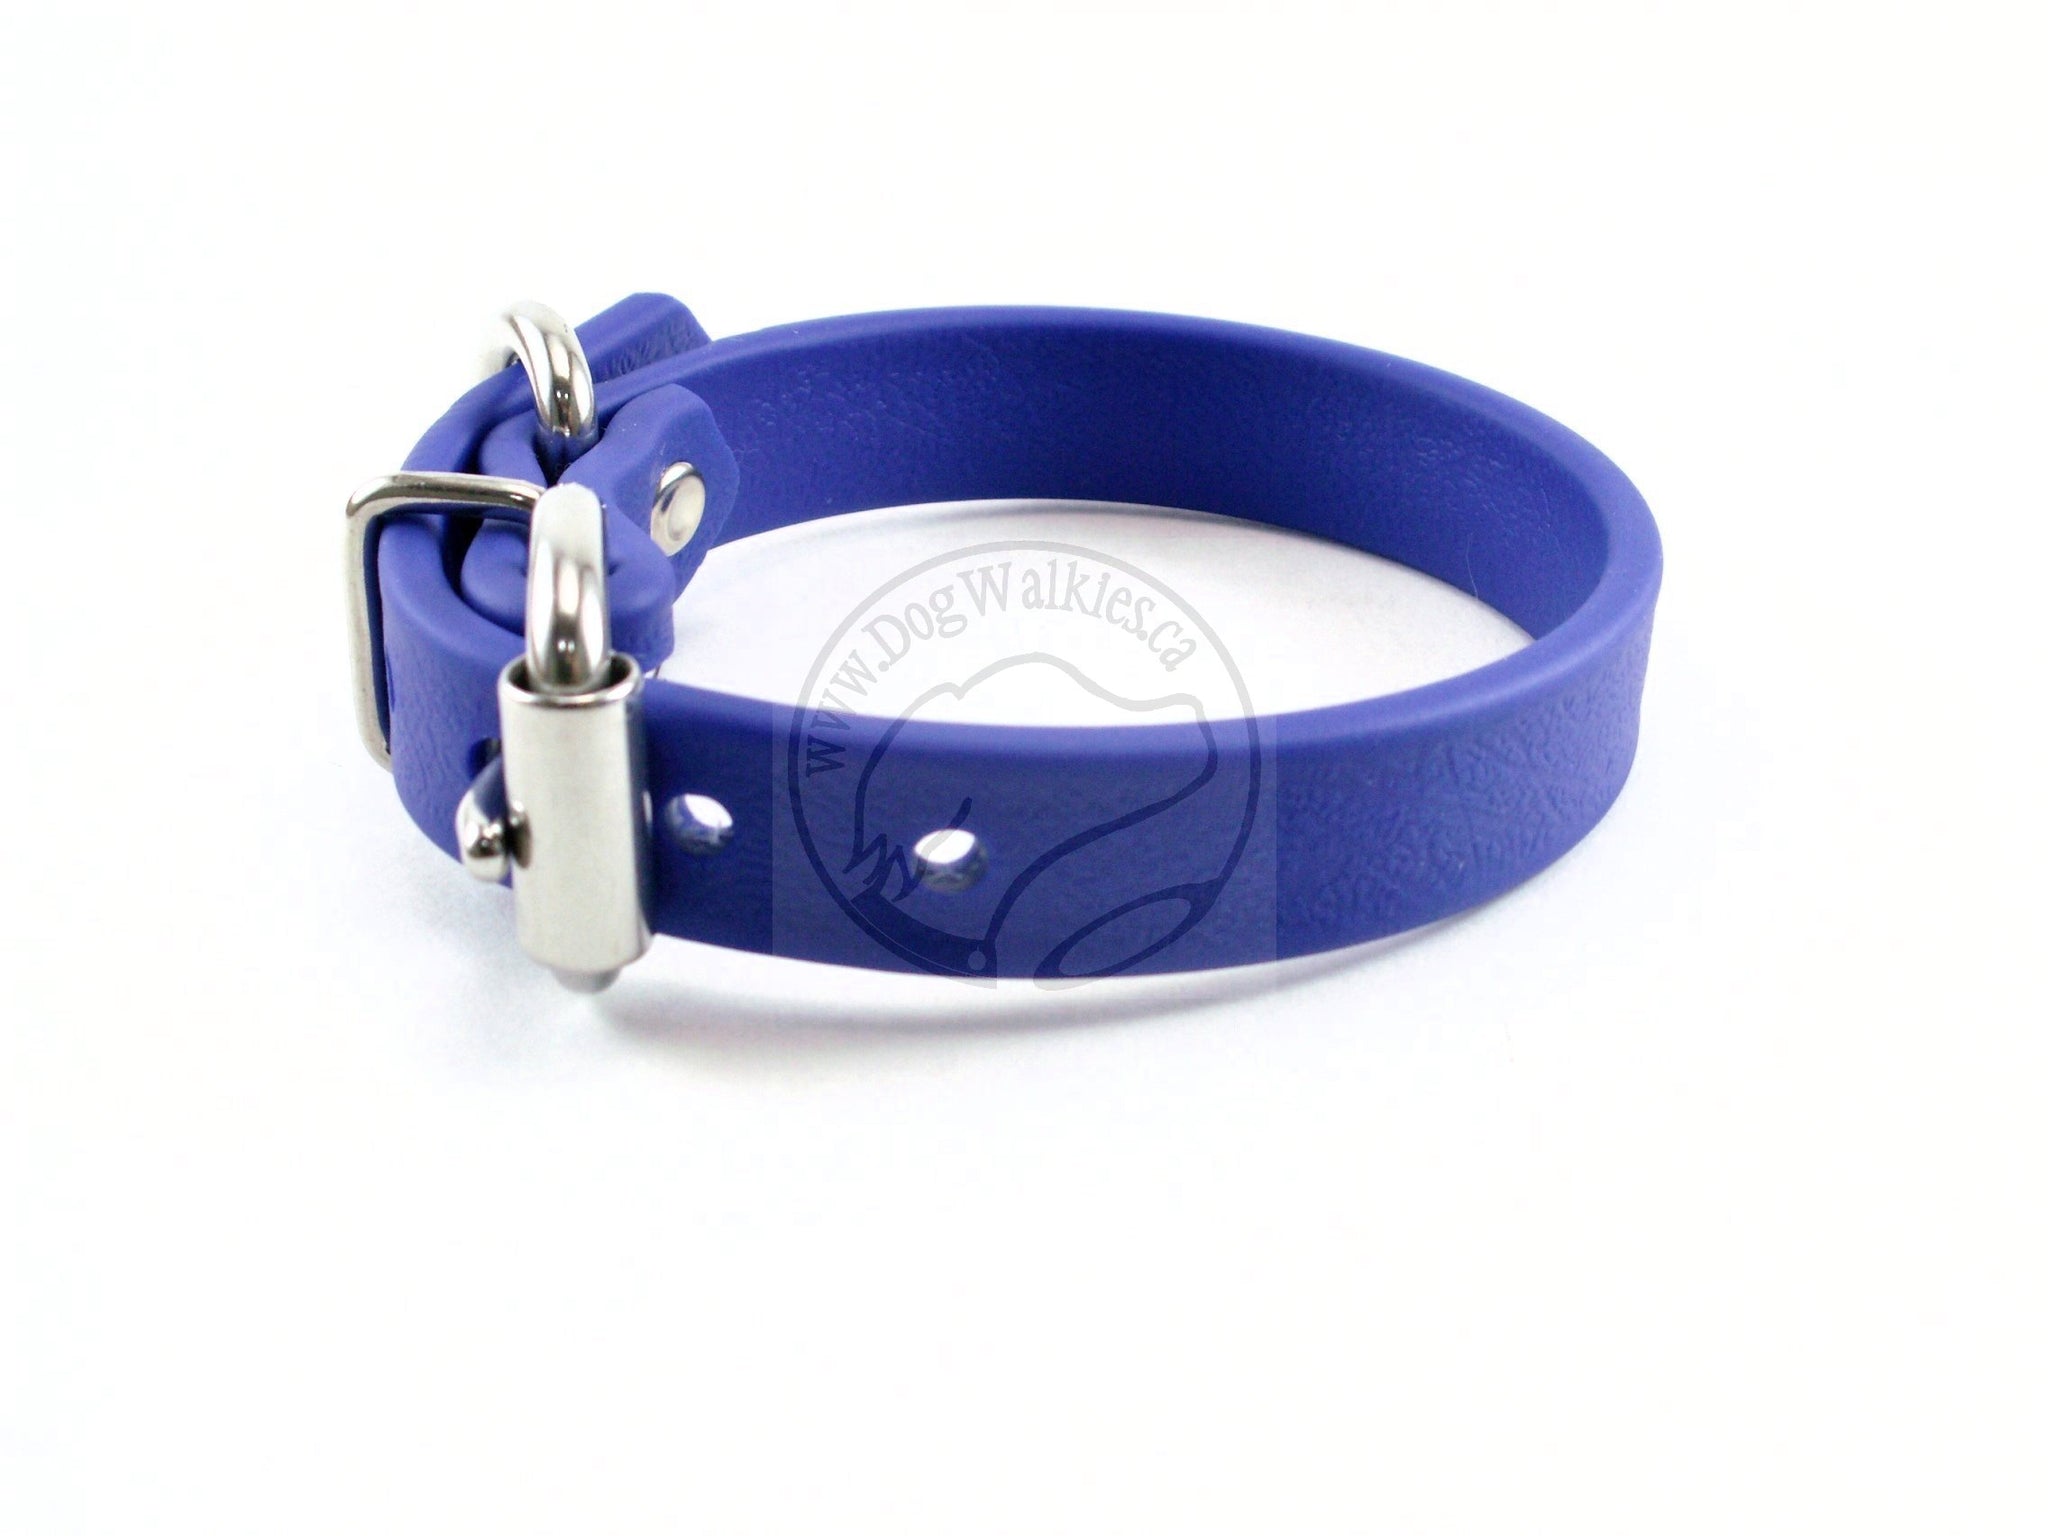 Royal Blue Biothane Dog Collar - 5/8"(16mm) wide